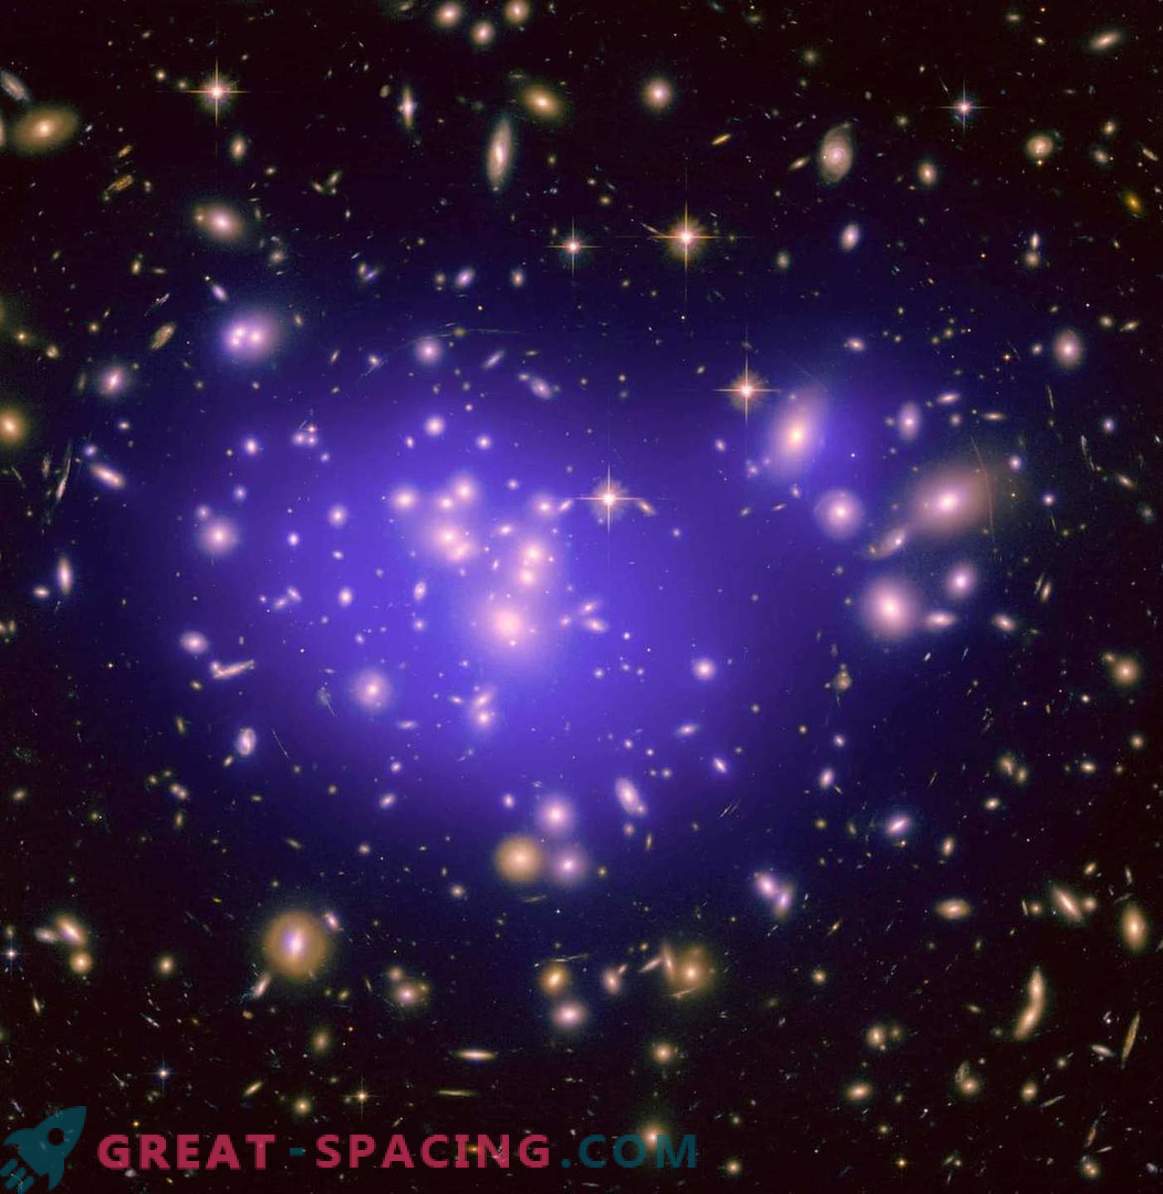 O que se originou anteriormente: galáxias ou buracos negros